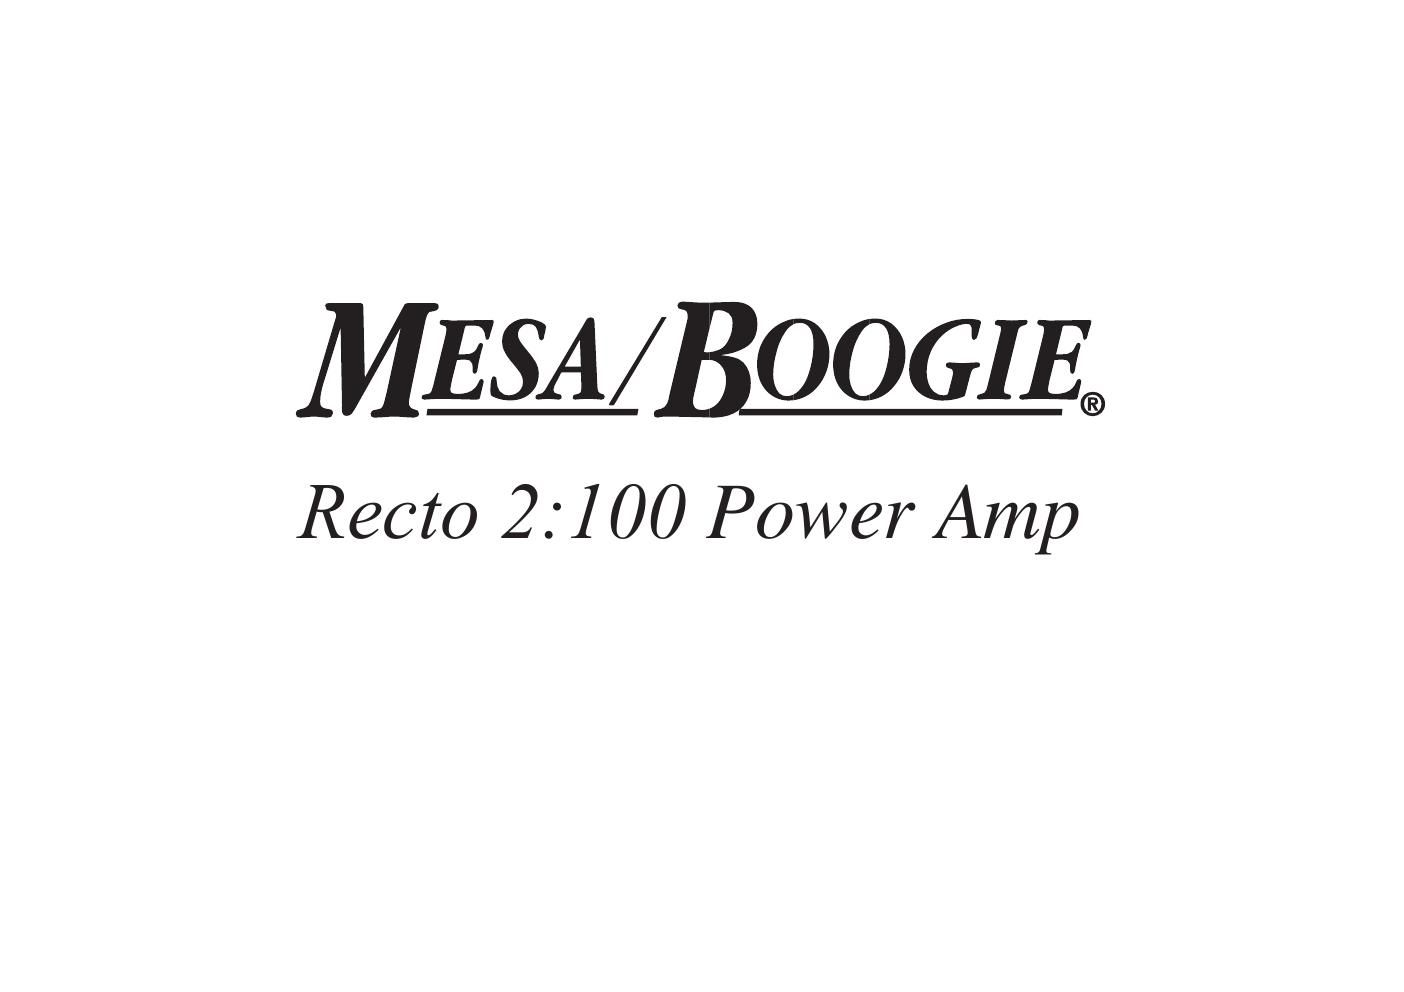 mesaboogie recto 2 100 stereo power amp schematics